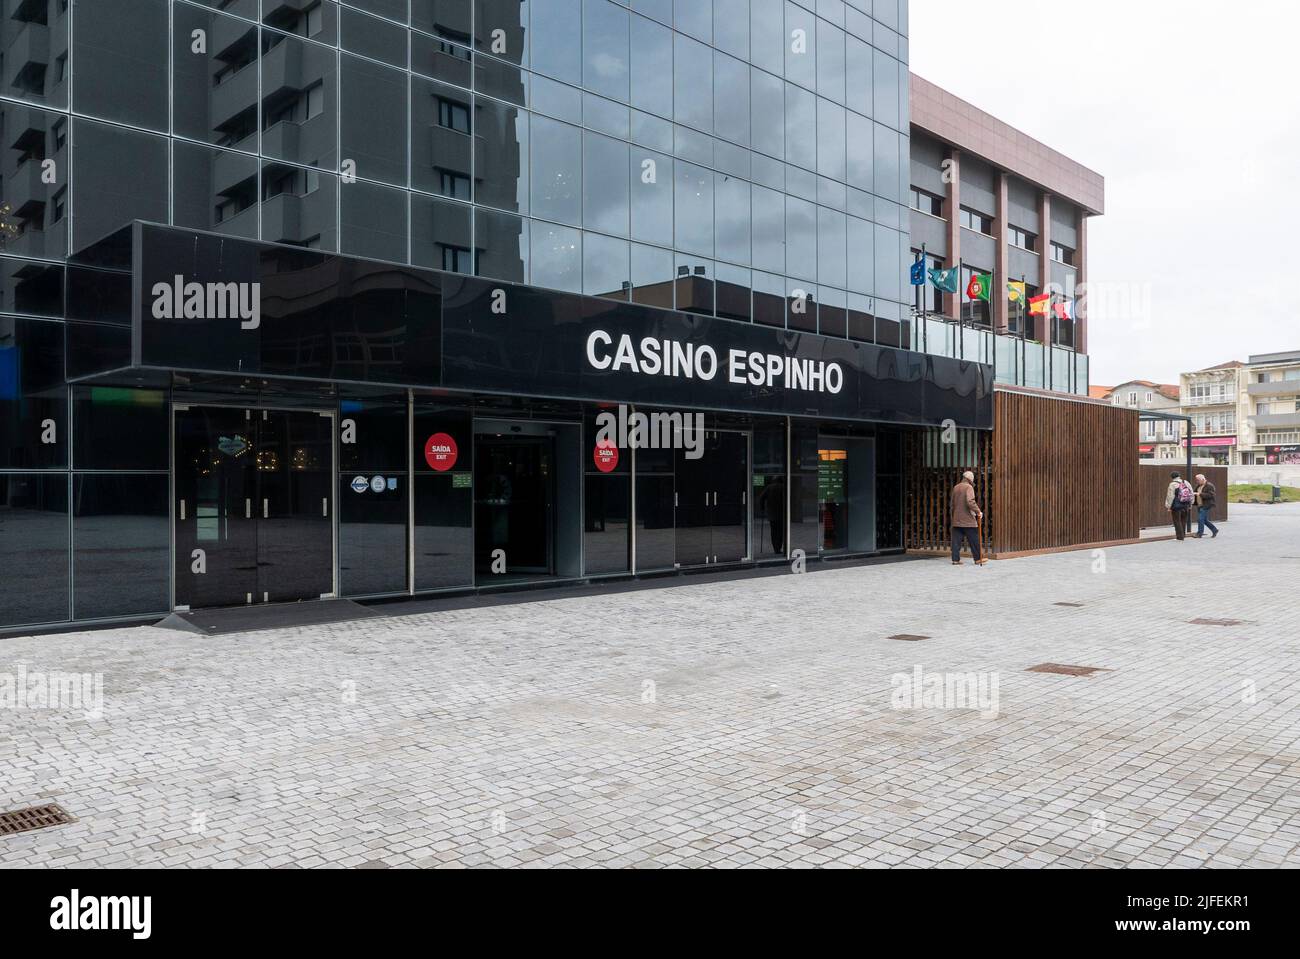 Casino de Espinho, Portugal Stock Photo